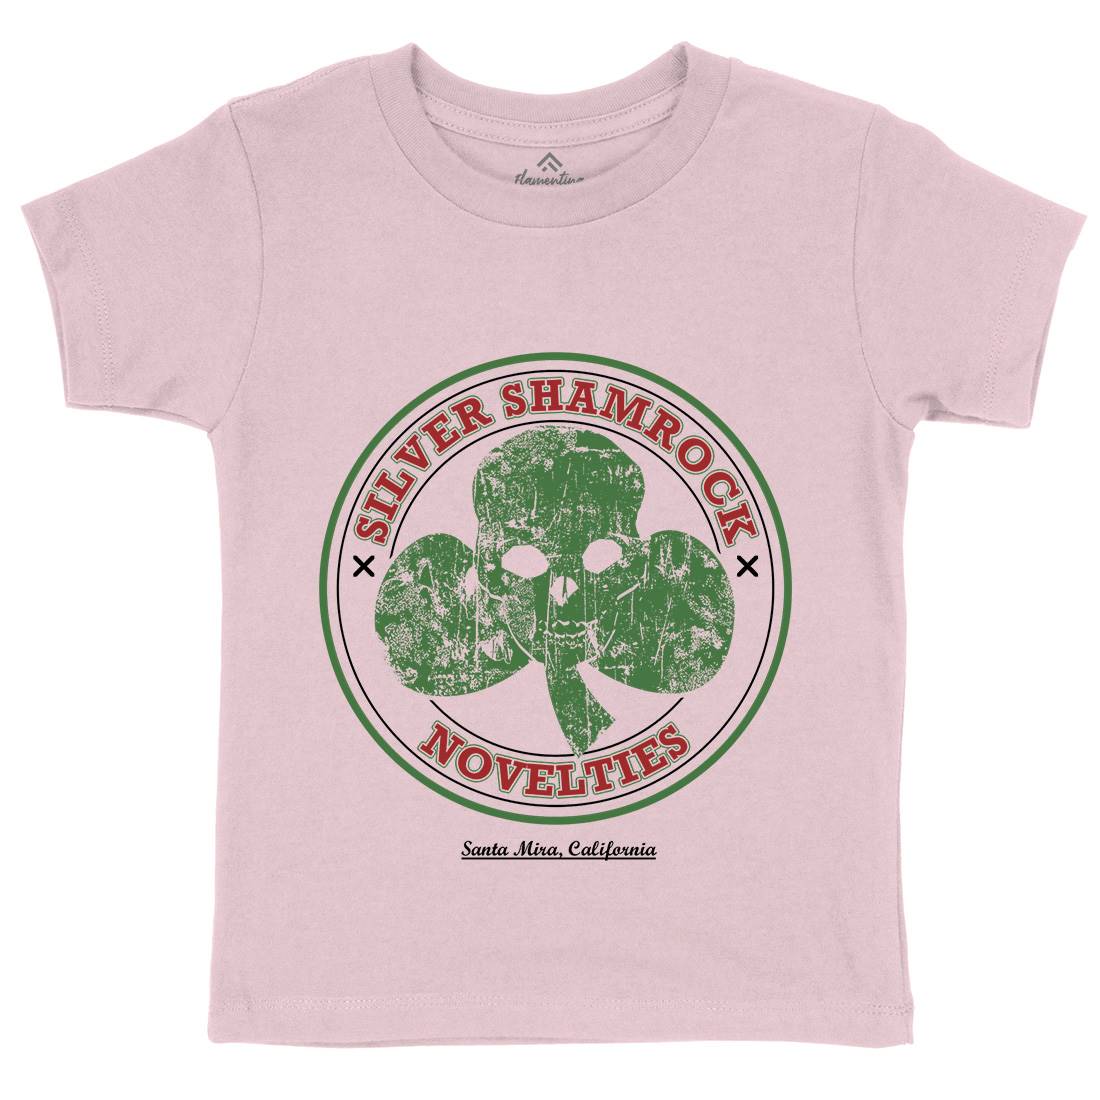 Silver Shamrock Novelties Kids Crew Neck T-Shirt Horror D332